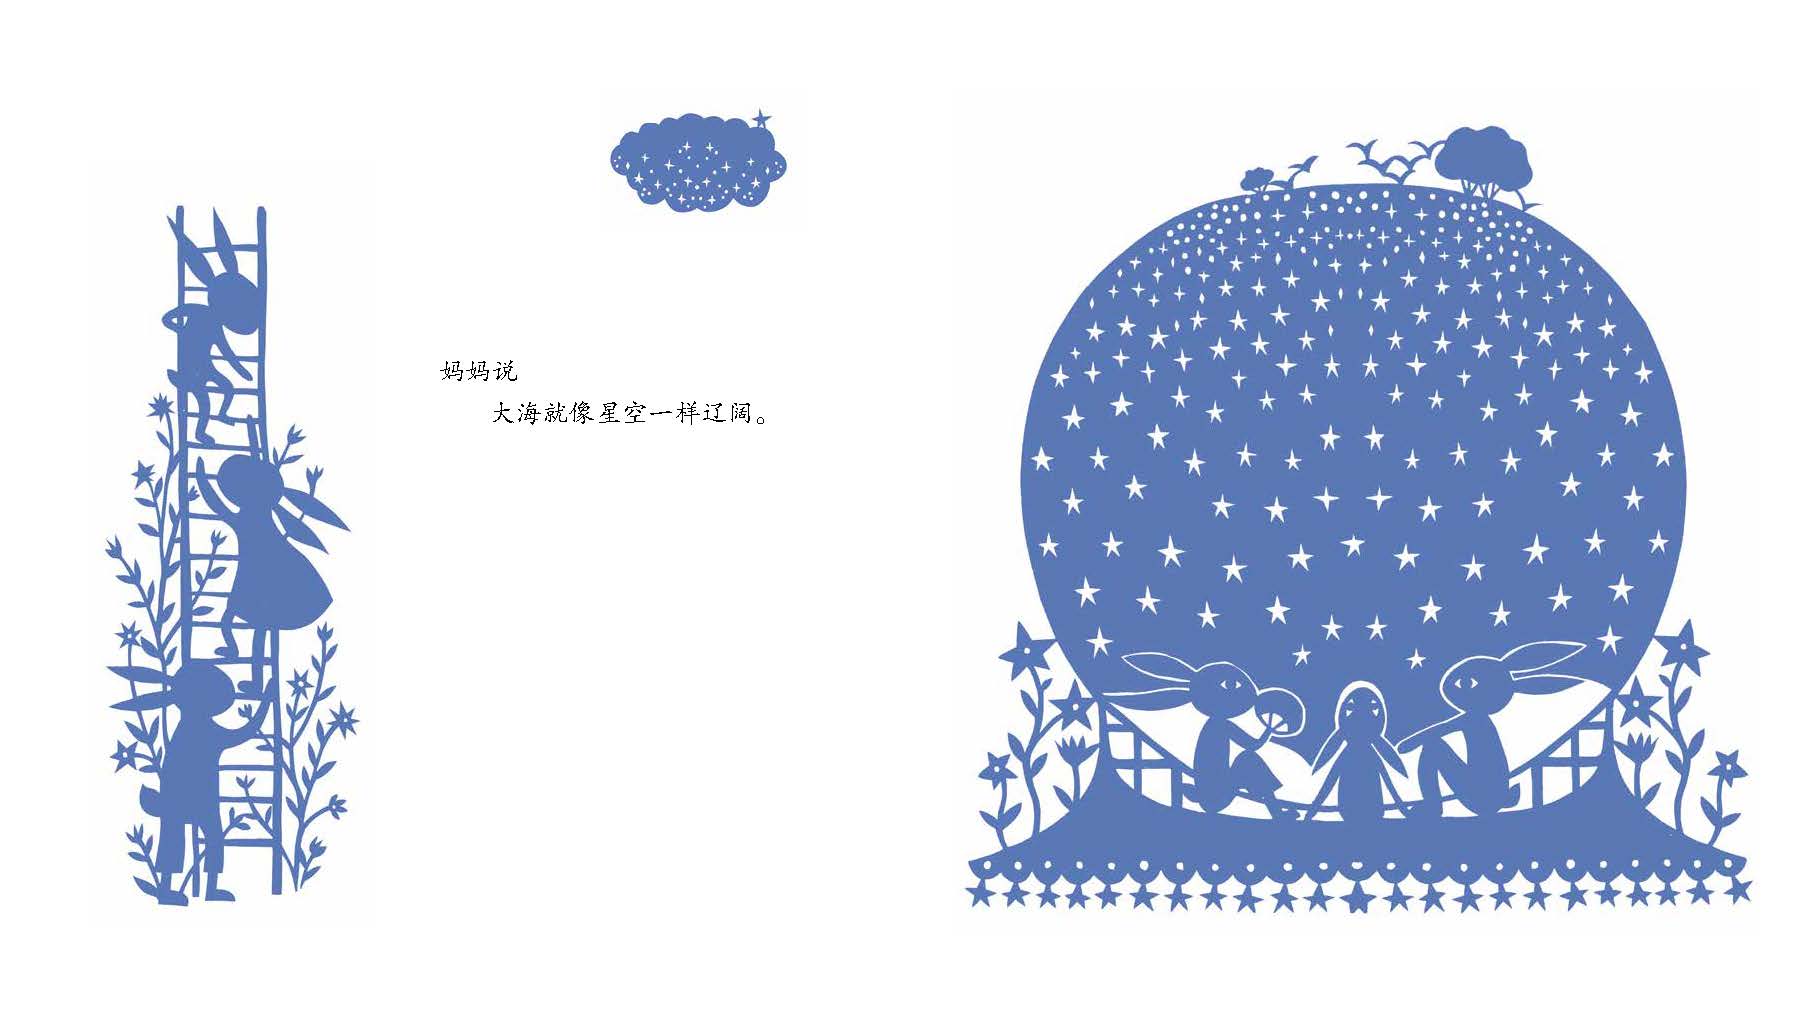 远方的风景剪纸绘本夏-中国绘原创图画书系列